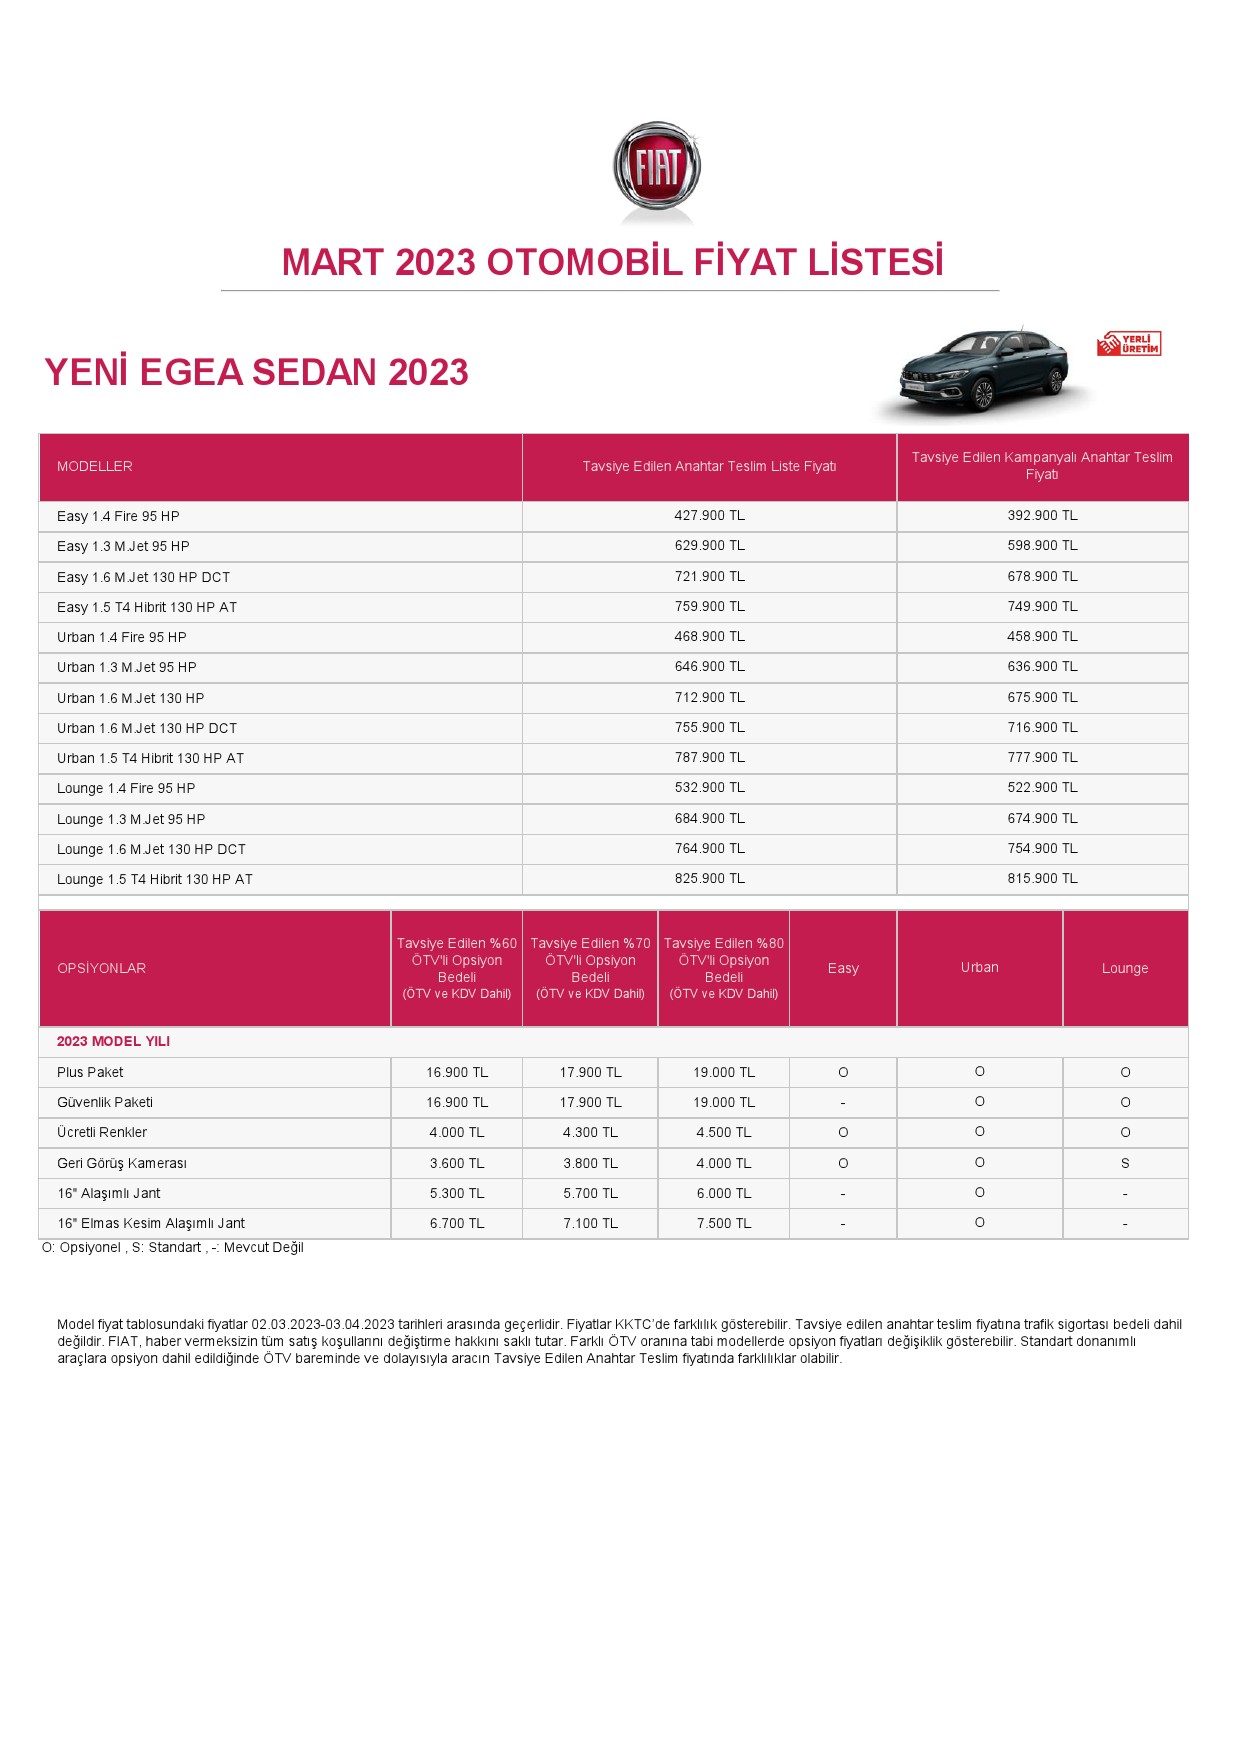 Fiat Egea Cross, Sedan ve Hatchback mart ayı fiyat listesi